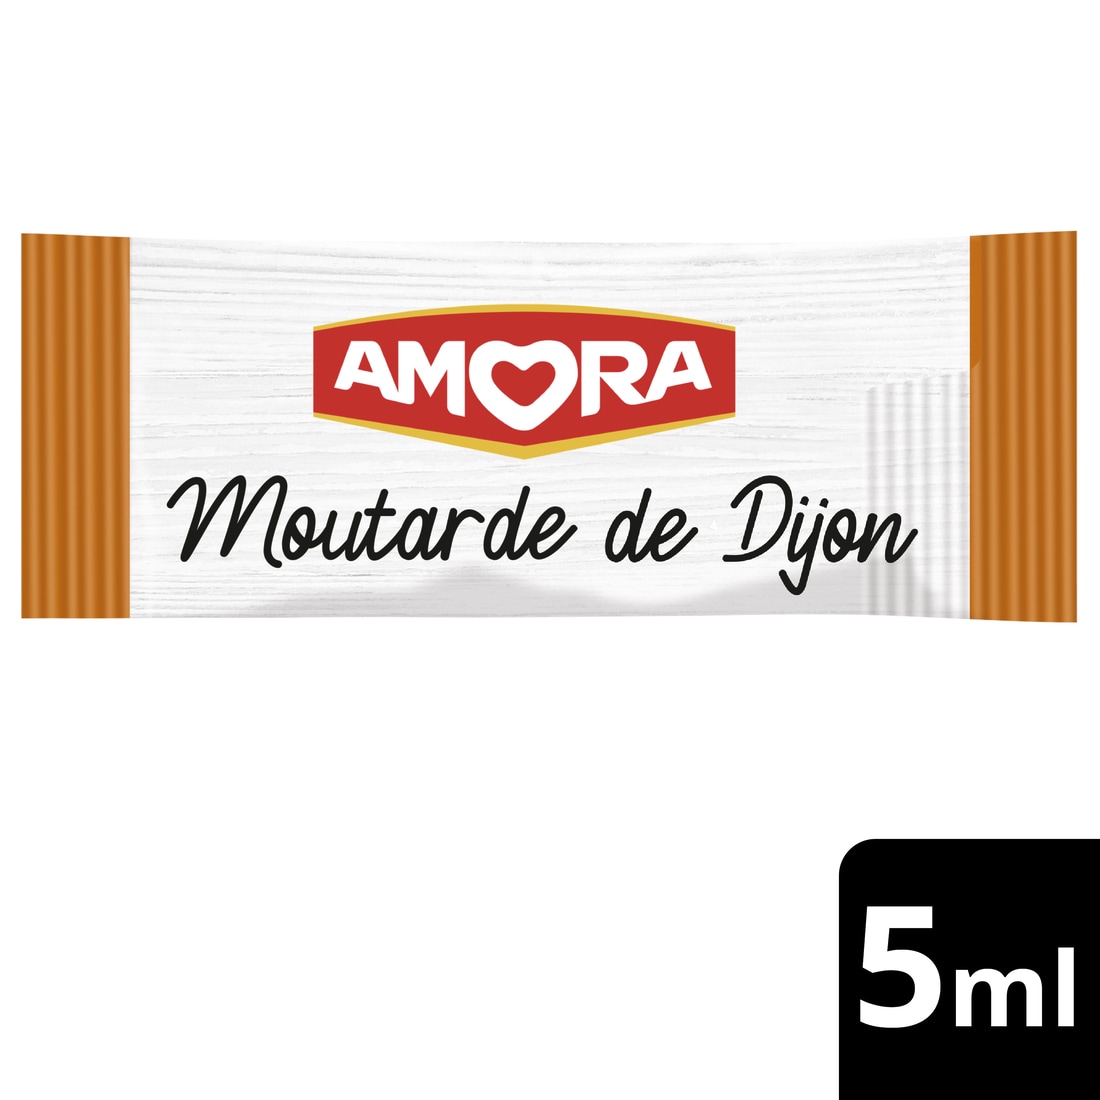 Produit sous quota - rapprochez-vous de votre distributeur - Amora Moutarde de Dijon Dosettes 5ml x 350 - 